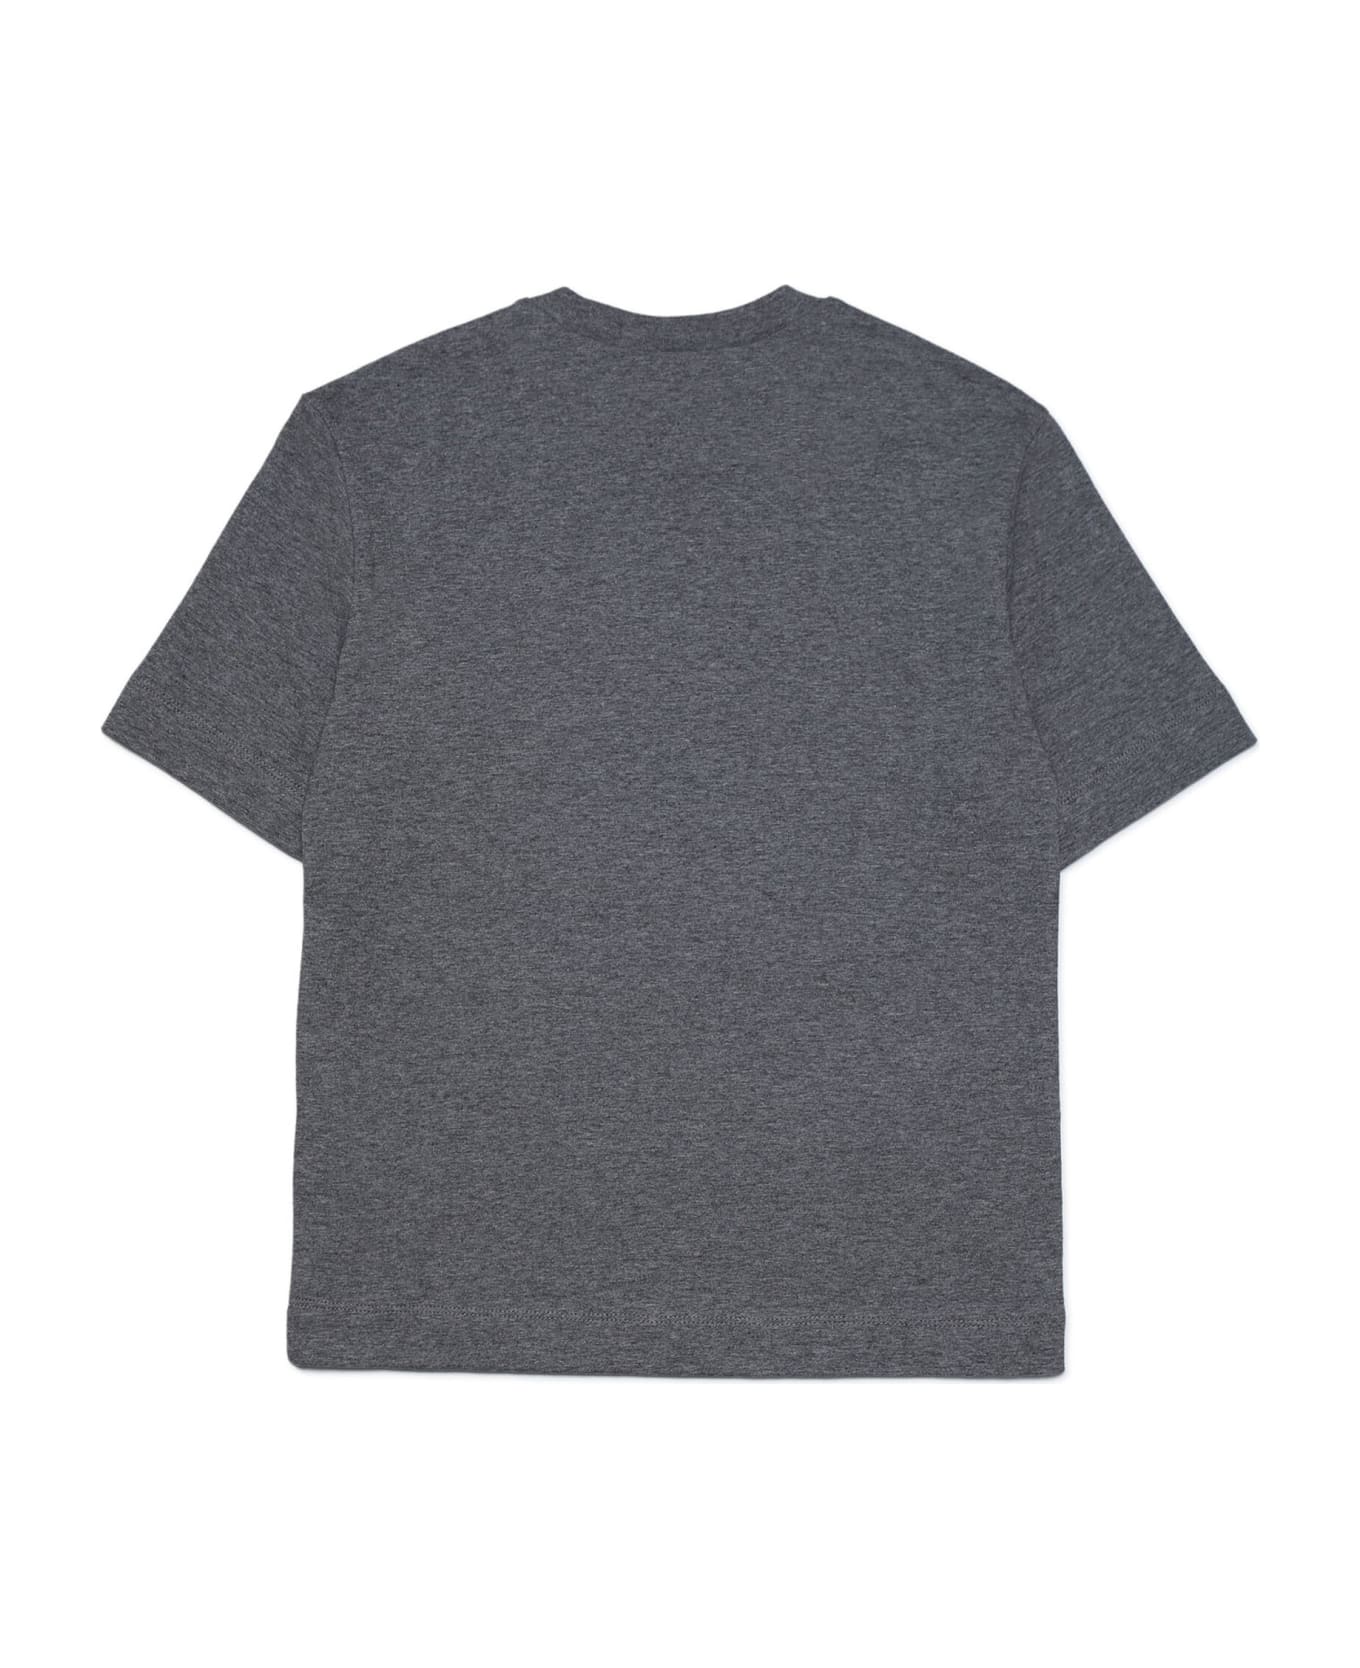 Marni Mt142u T-shirt Marni - Medium grey